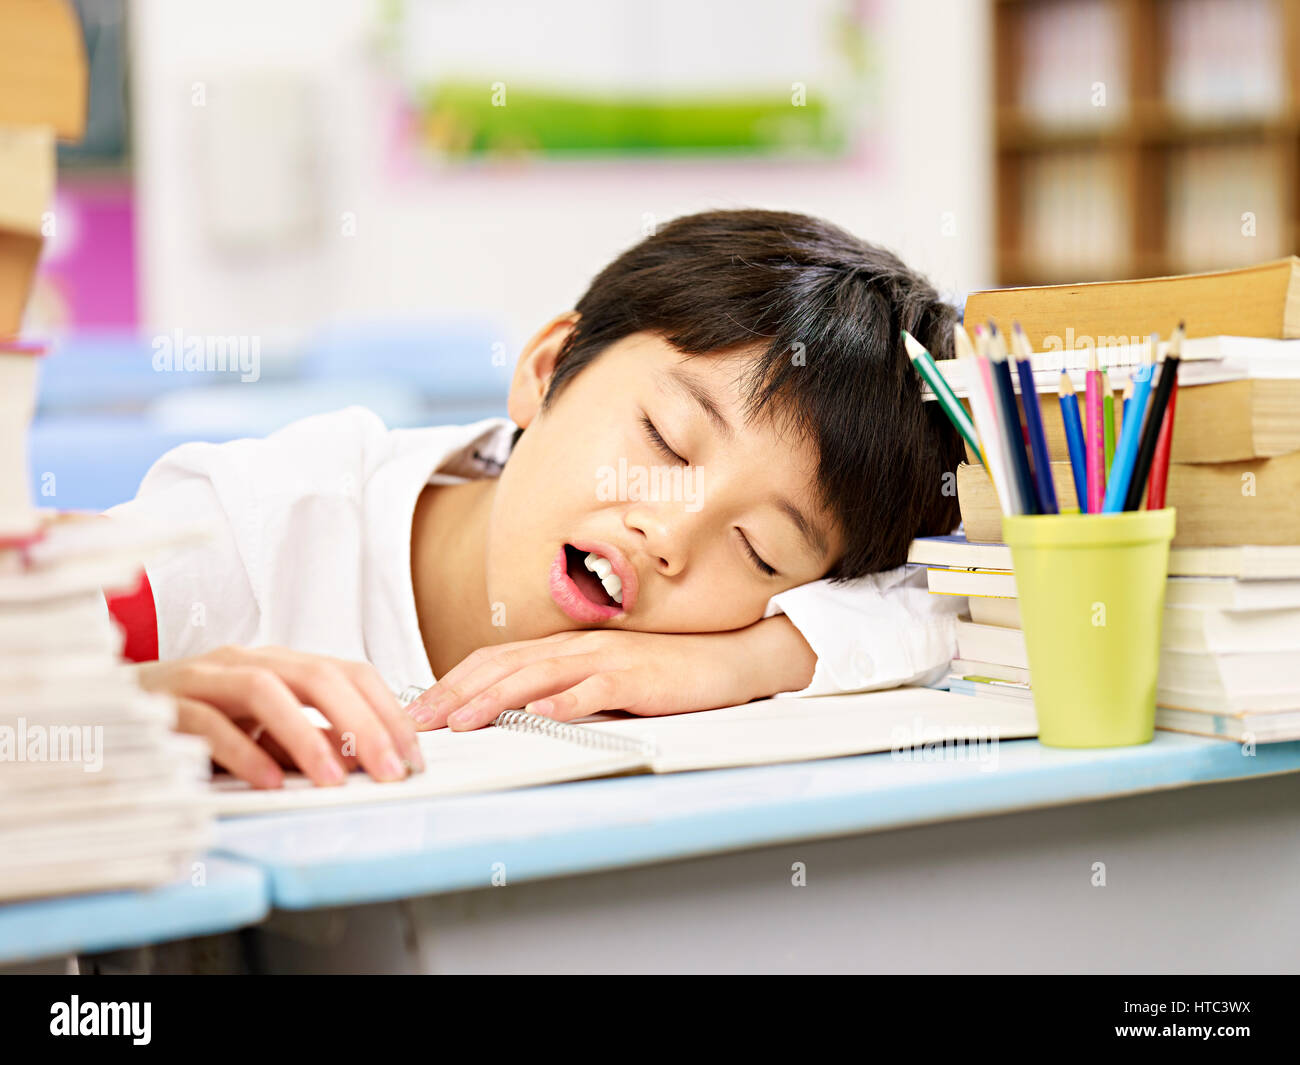 Stanco ed esausto asiatici scuola primaria studente di addormentarsi mentre studiava Foto Stock